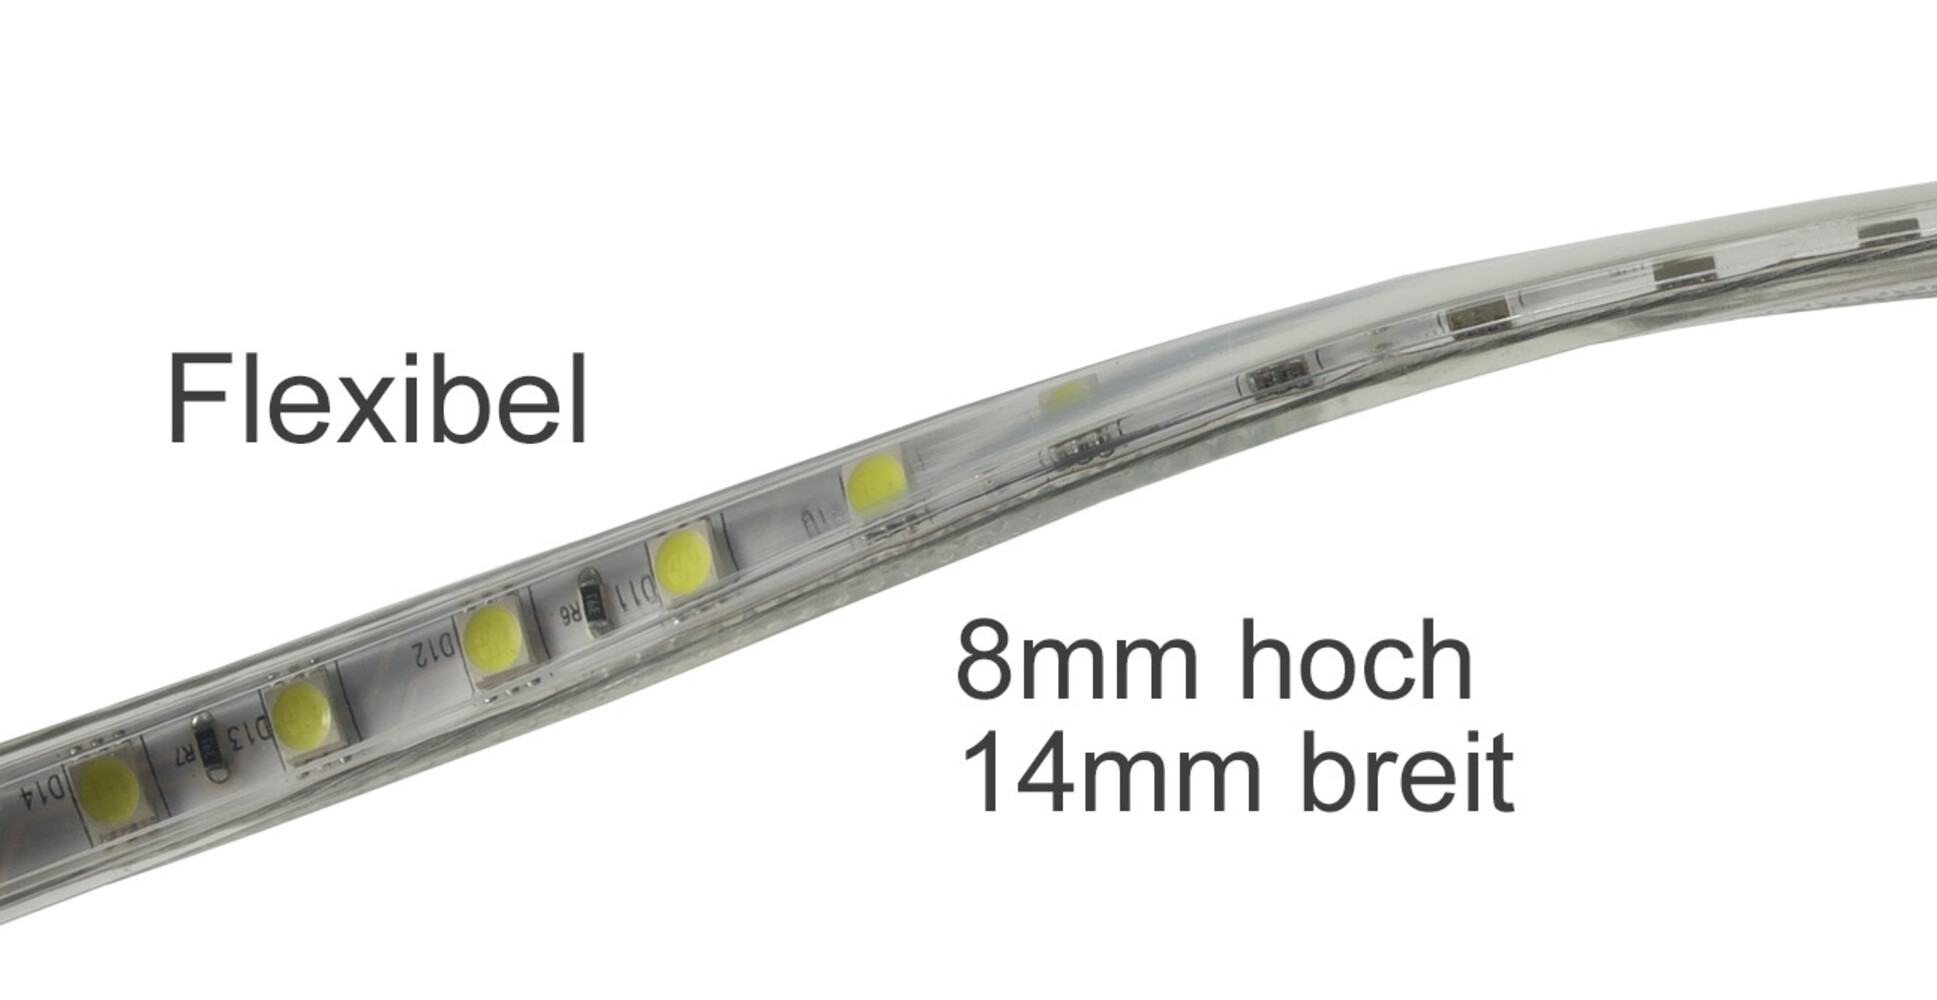 Strahlender warmweißer LED-Streifen von ChiliTec mit beeindruckender Helligkeit